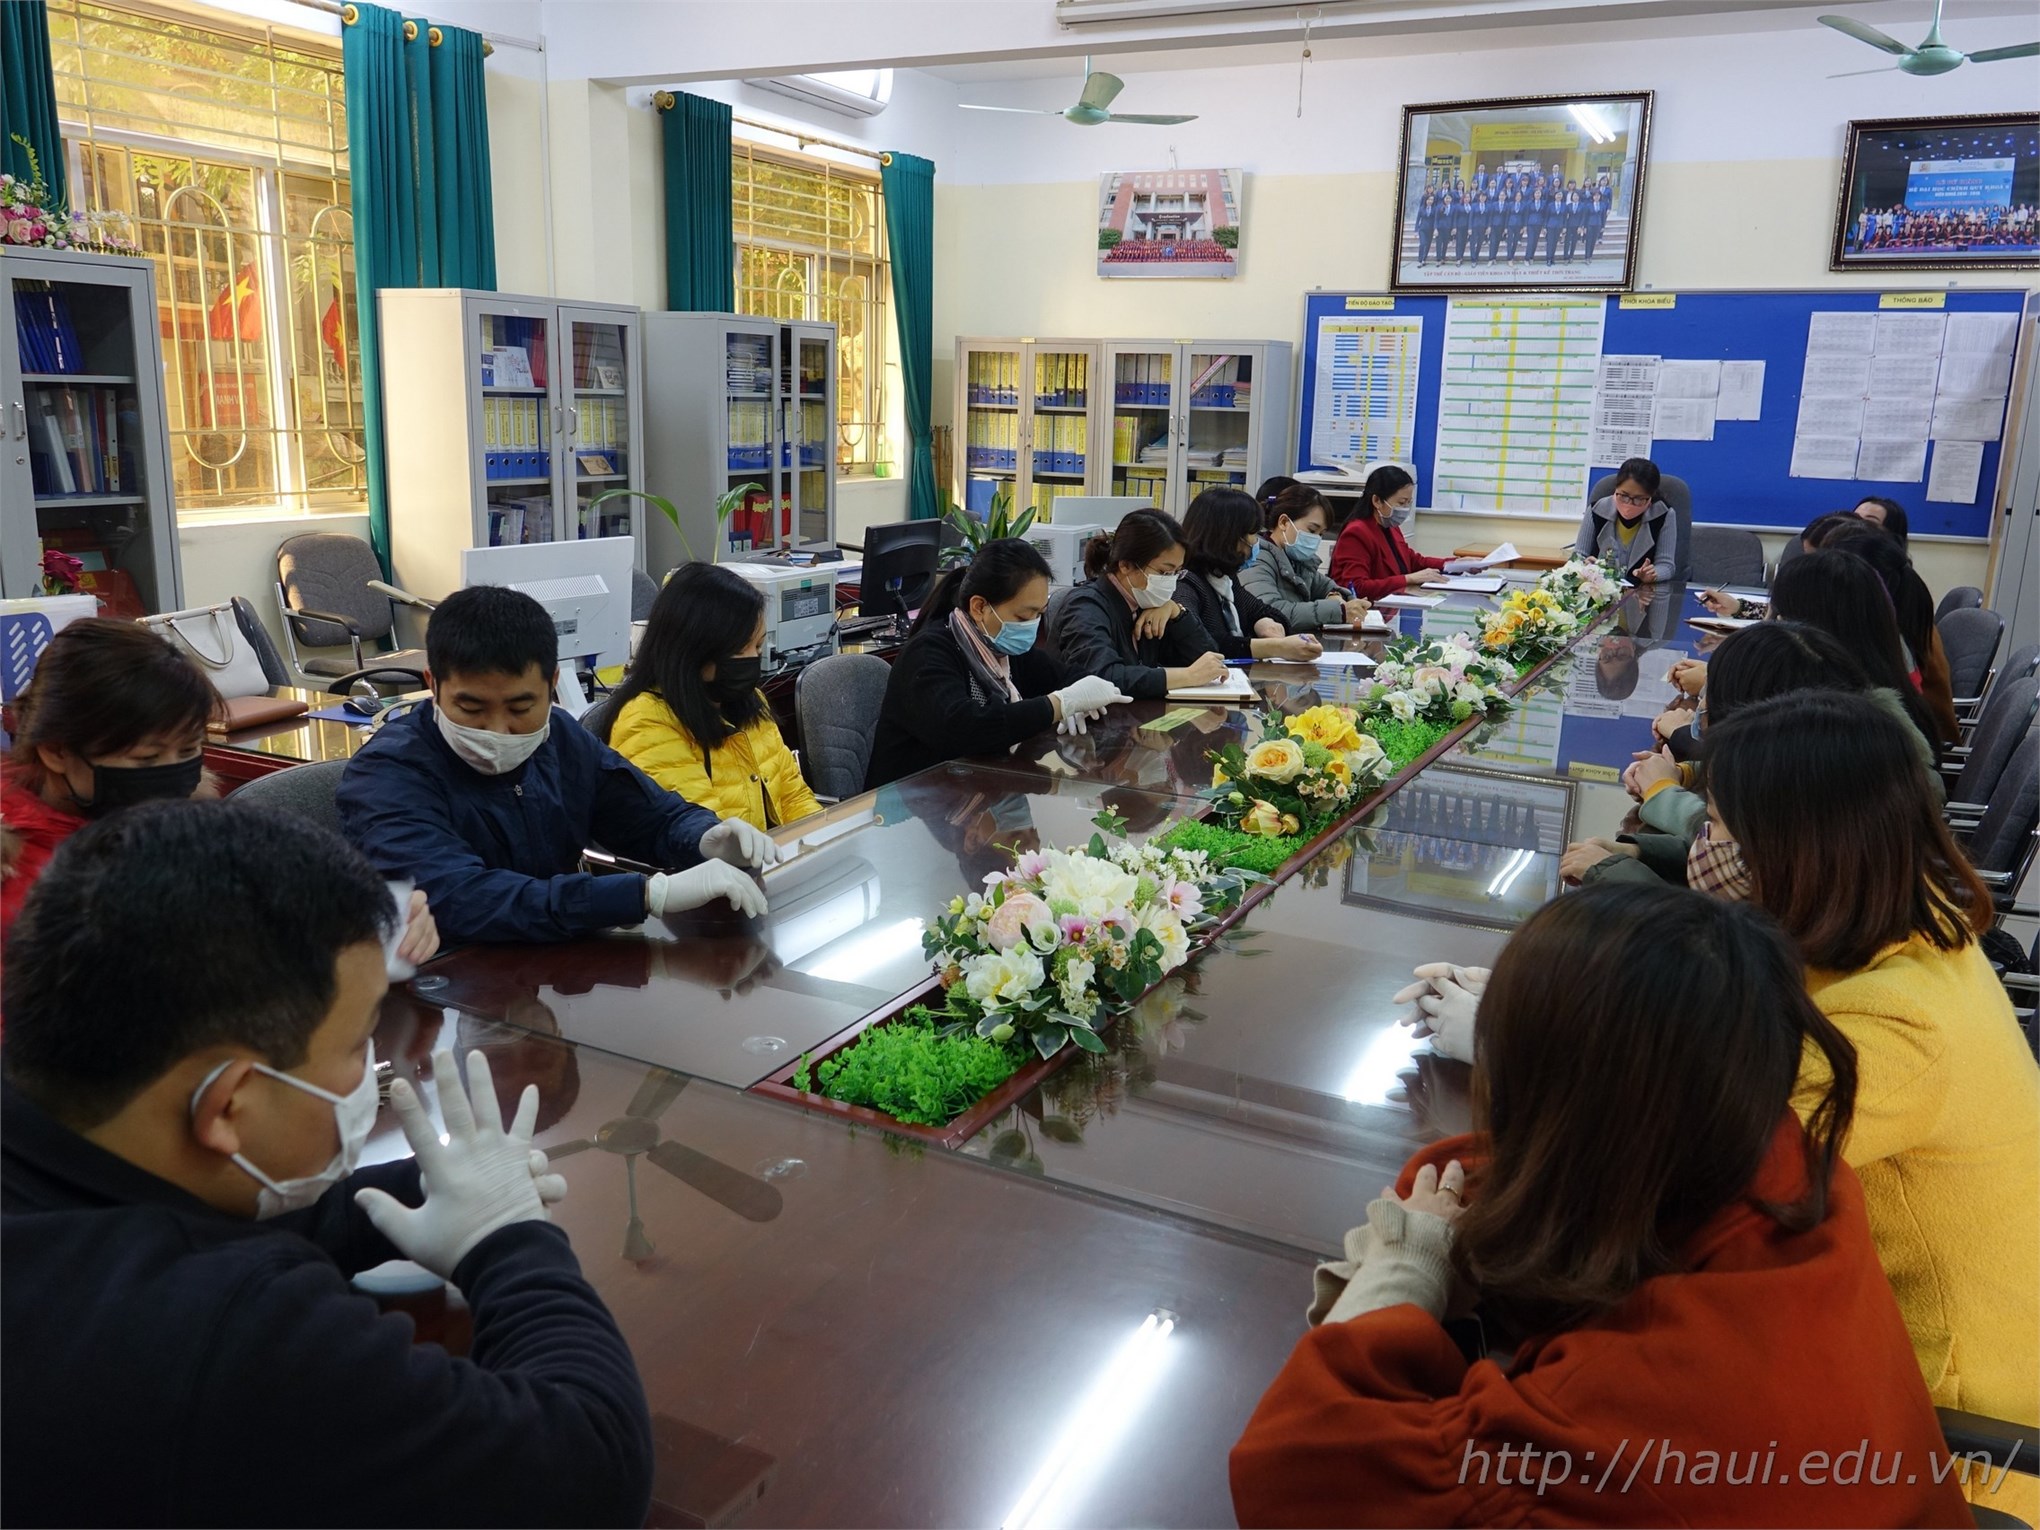 Sau sản xuất dung dịch rửa tay khô, Đại học Công nghiệp Hà Nội tiếp tục sản xuất 30.000 khẩu trang vải phát miễn phí cho sinh viên, cán bộ giảng viên nhà trường